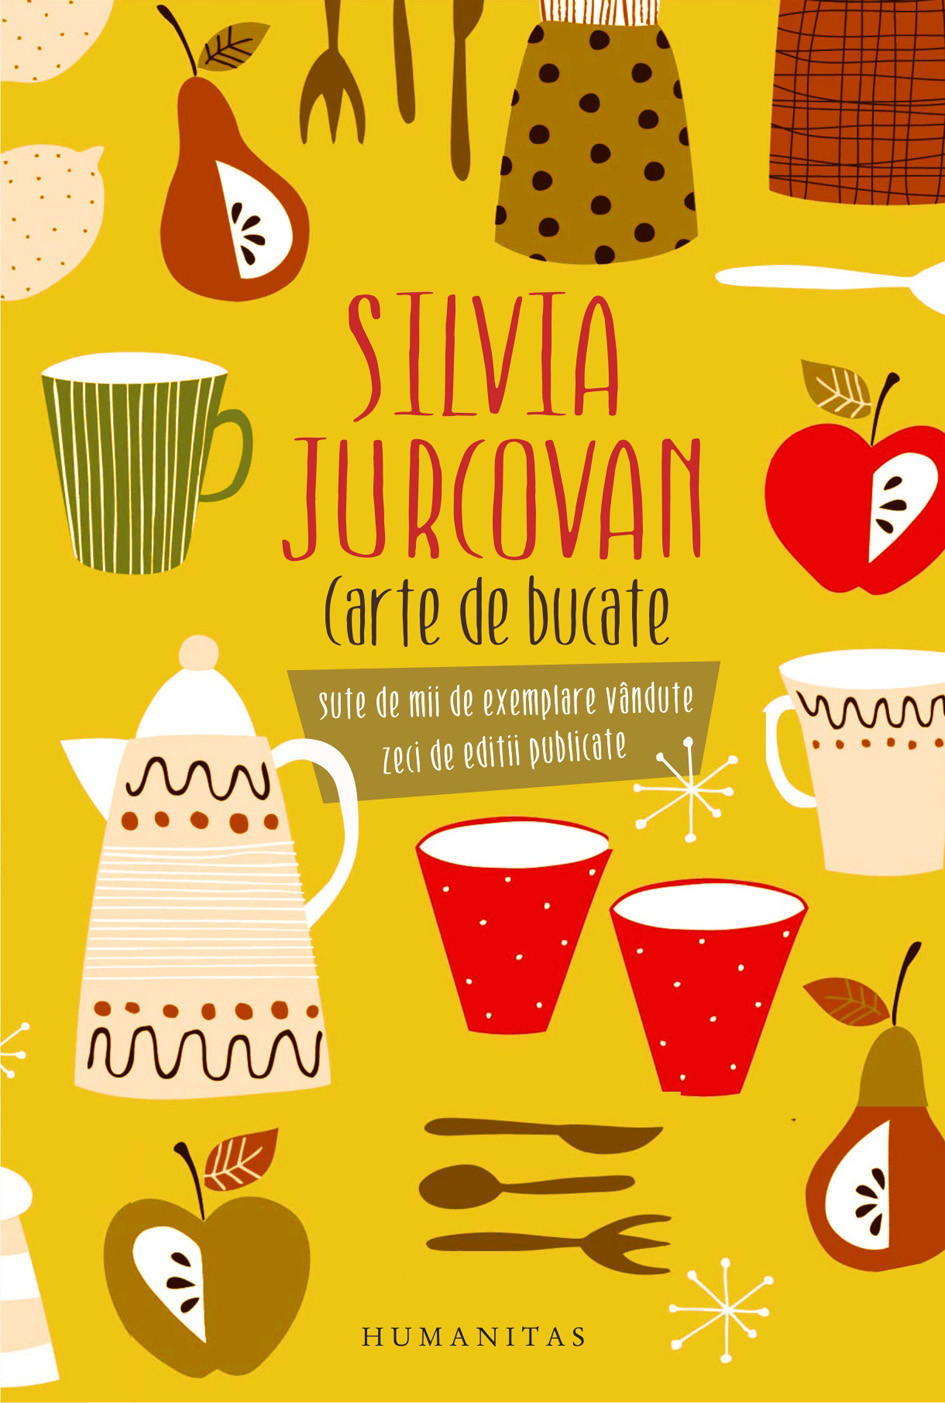 Carte de bucate | Silvia Jurcovan carturesti.ro